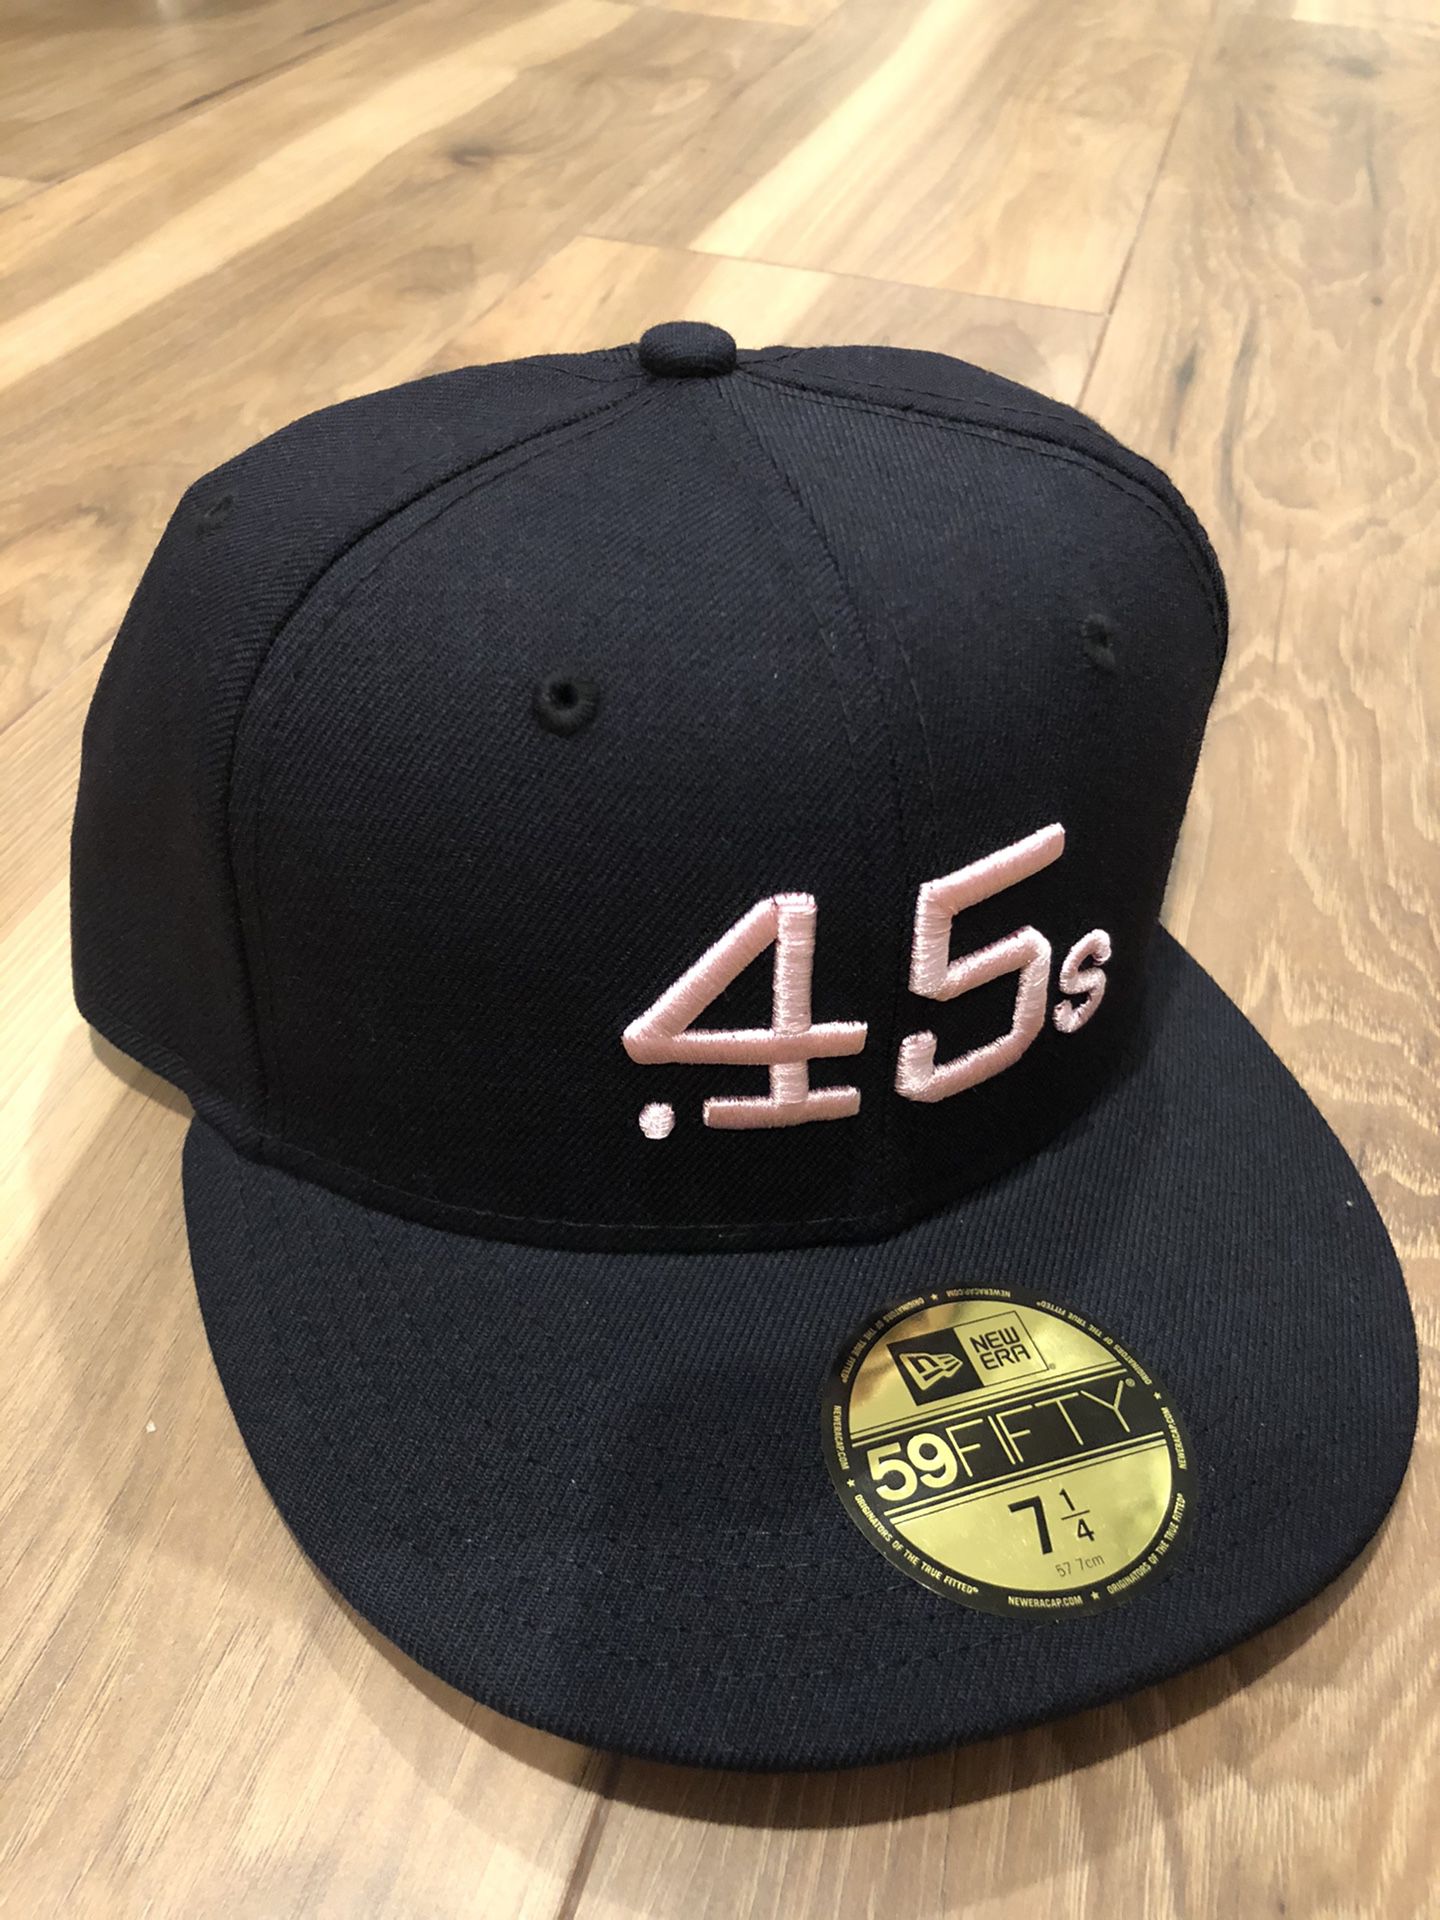 new era houston colt 45s hat